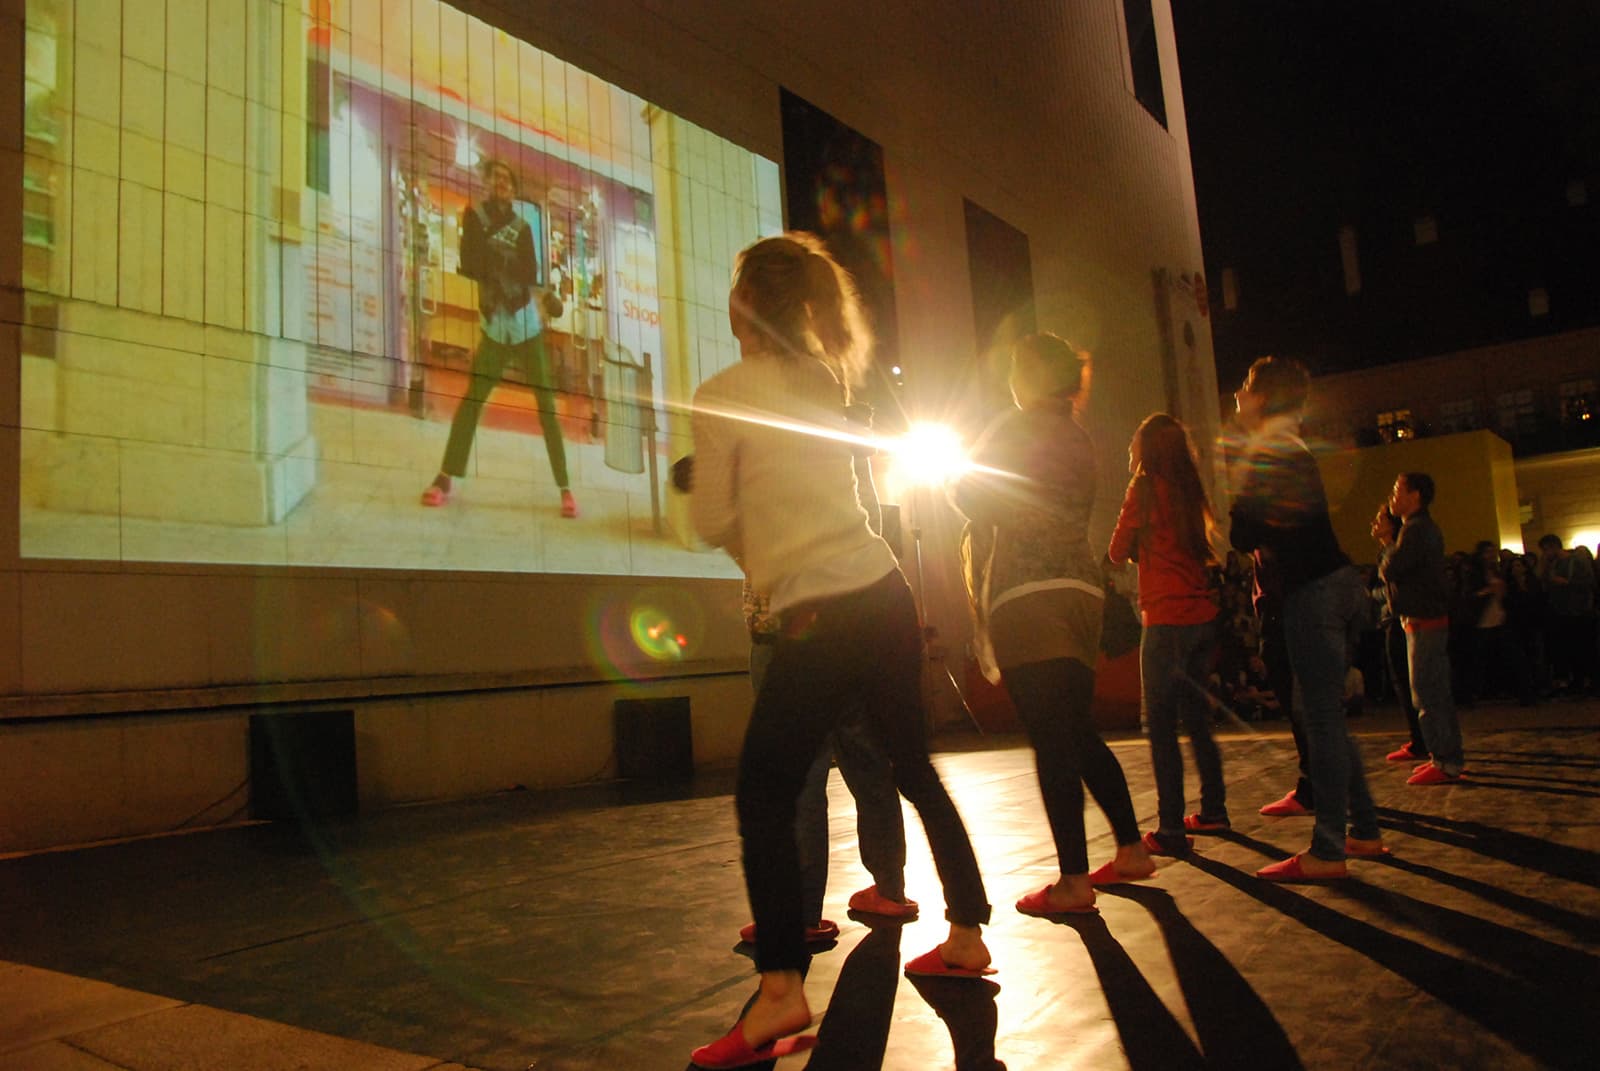 Menschen tanzen in einer Reihe, ihr Blick geht an eine Wand, auf der ein Video projiziert wird.